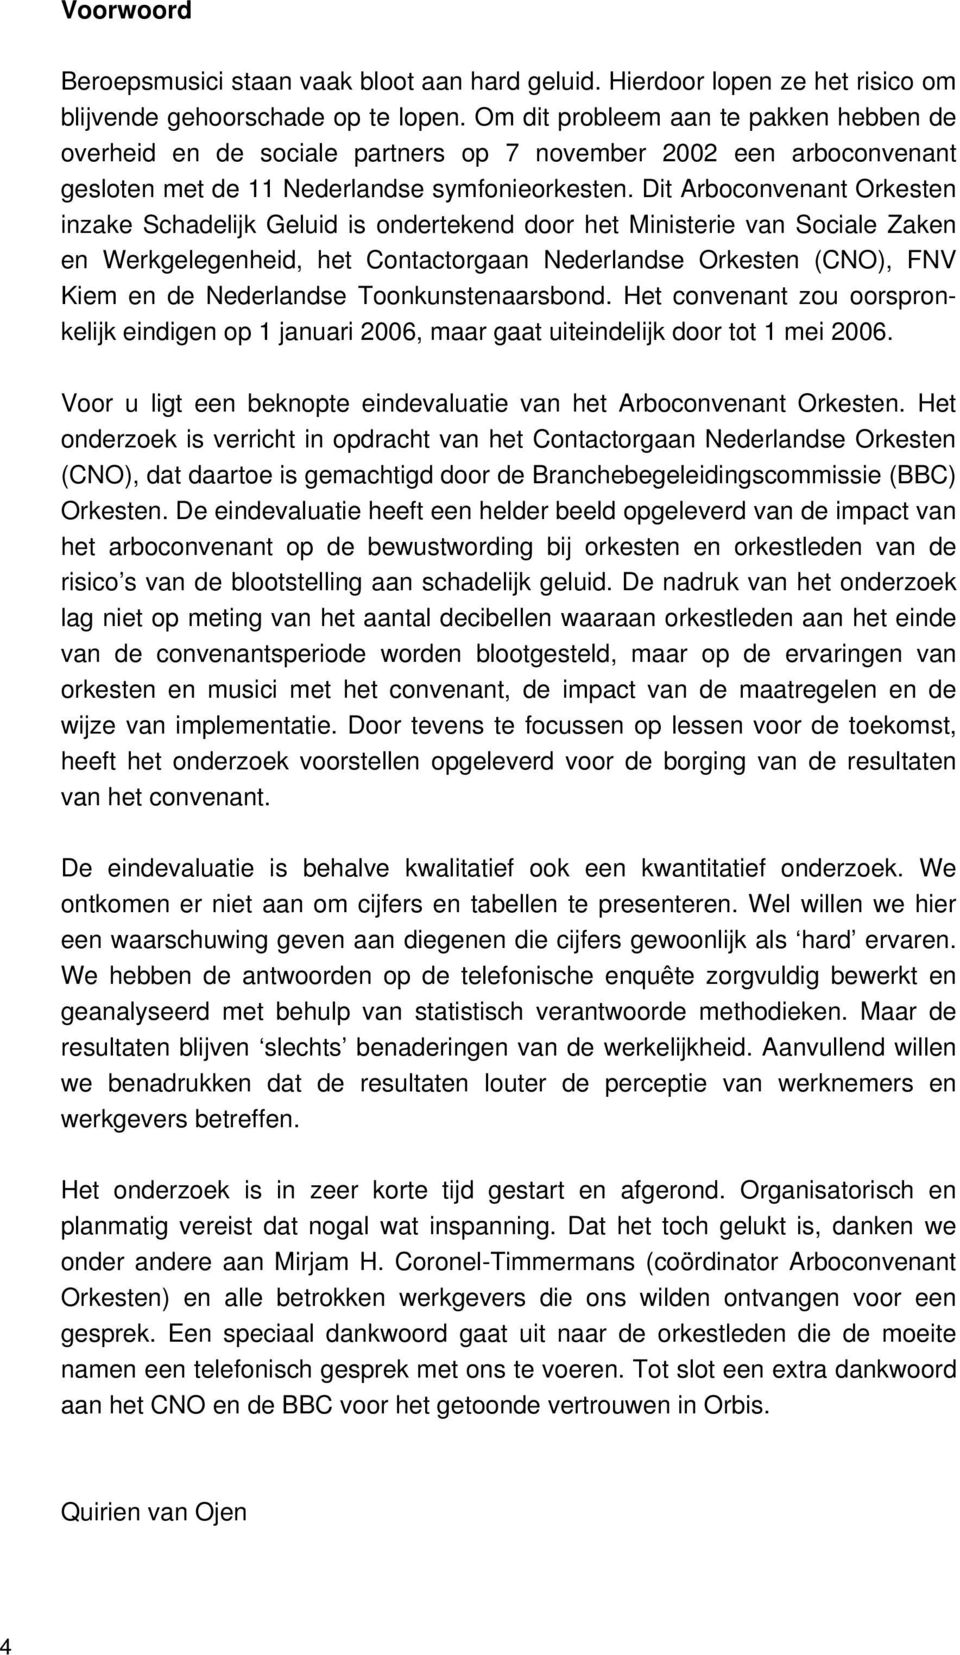 Dit Arboconvenant Orkesten inzake Schadelijk Geluid is ondertekend door het Ministerie van Sociale Zaken en Werkgelegenheid, het Contactorgaan Nederlandse Orkesten (CNO), FNV Kiem en de Nederlandse